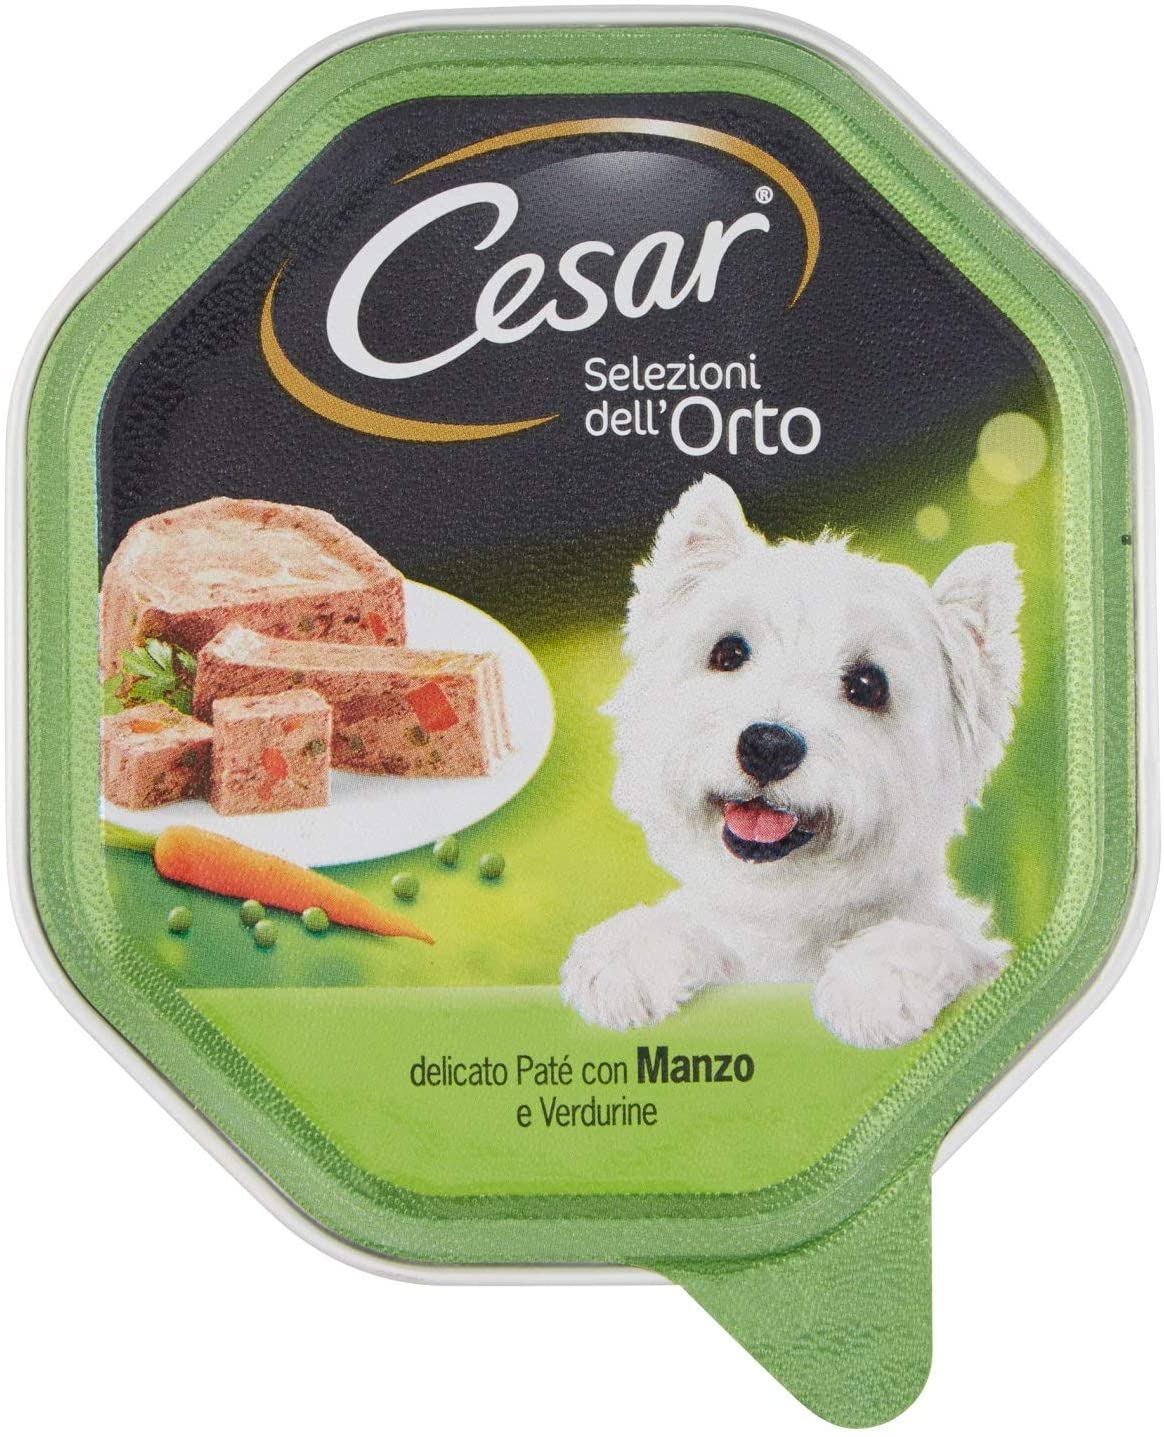  Cesar – selezioni del orto, Delicada fuagrás con Manzo Y verdurine, para Perros Adultos, 150 g 